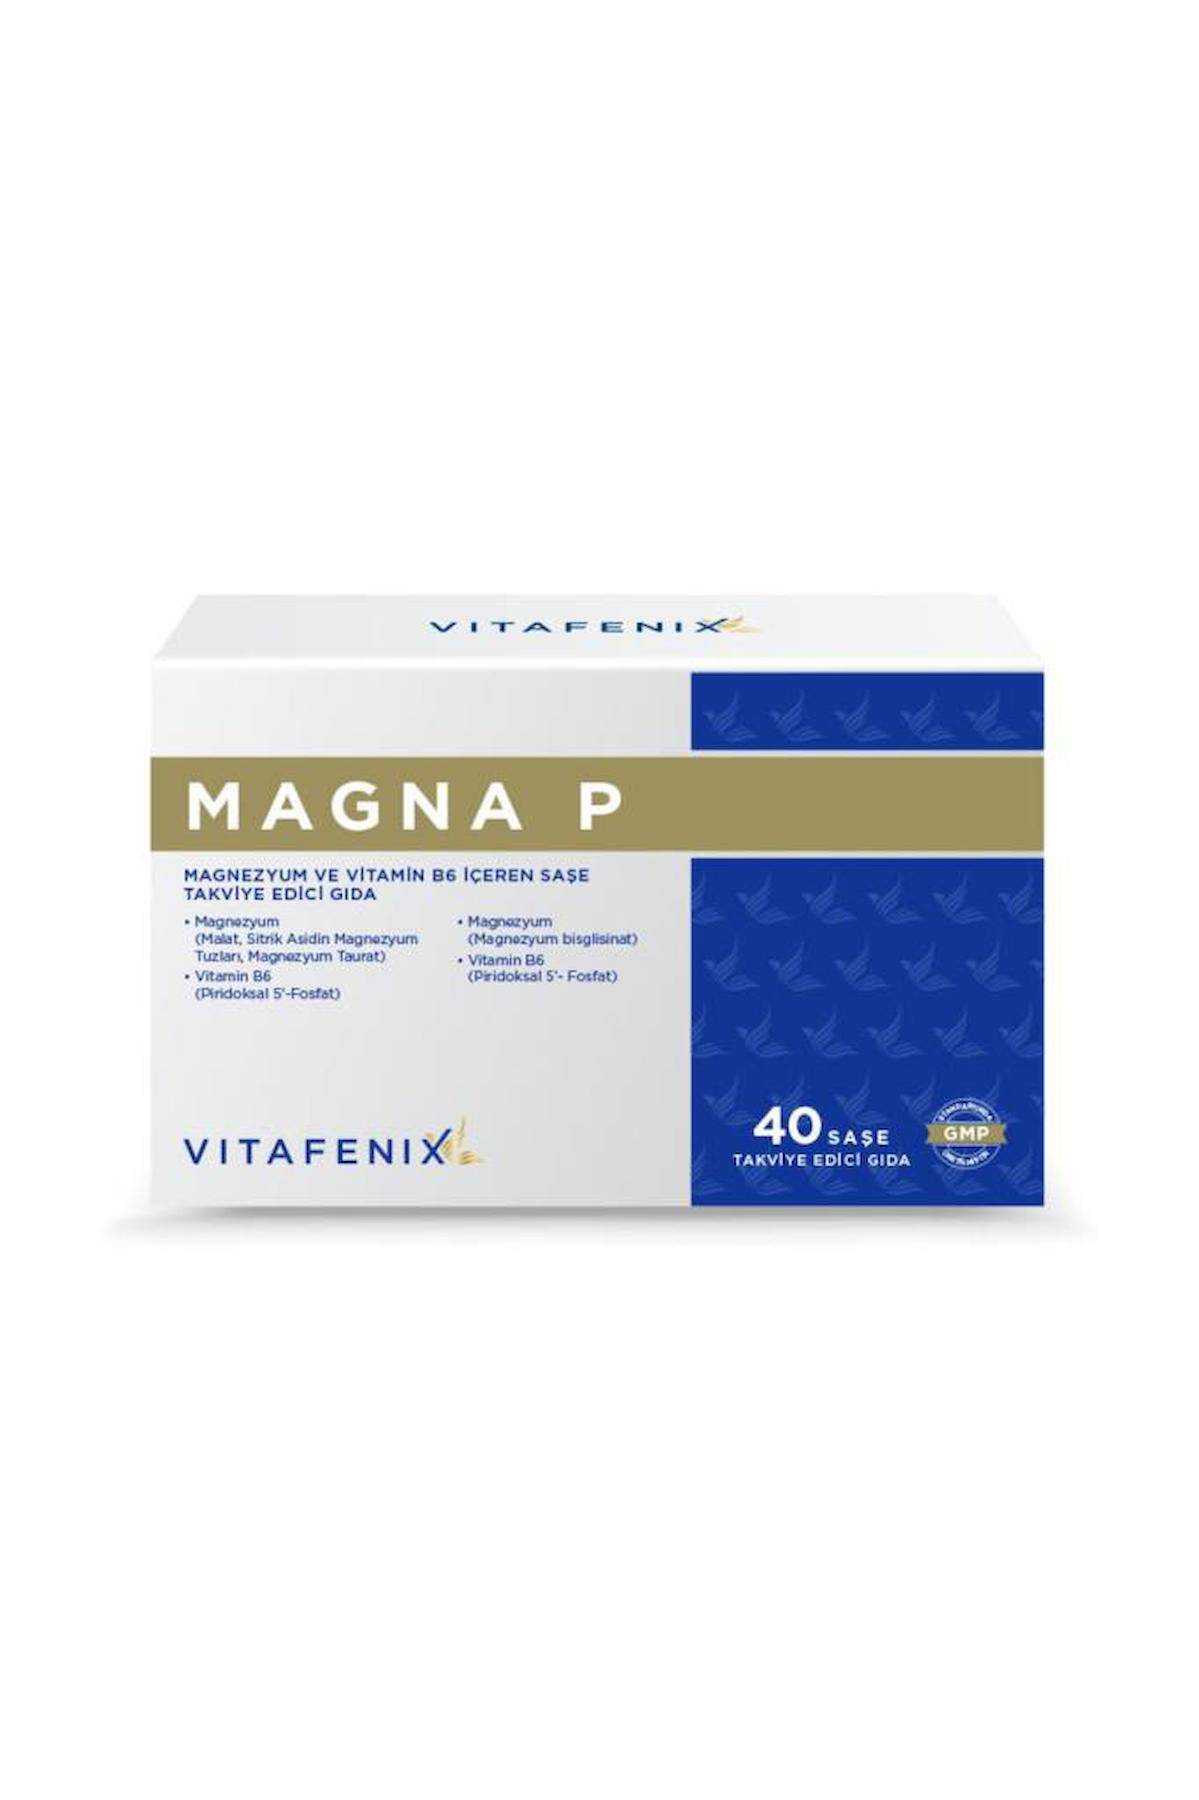 Vitafenix Magnezyum Aromasız Unisex Vitamin 40 Şase